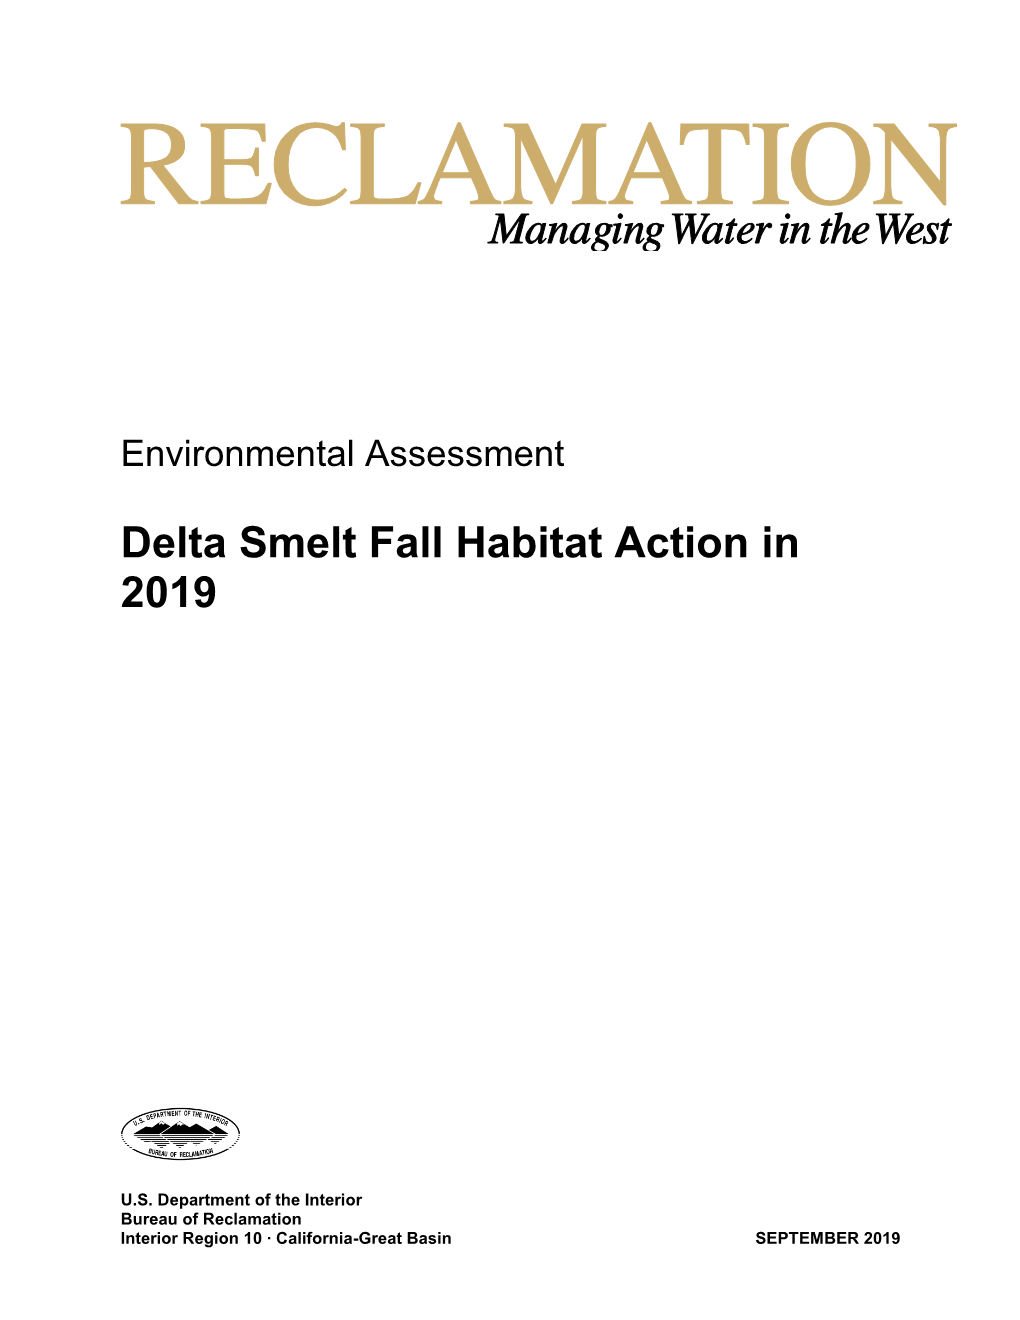 Delta Smelt Fall Habitat Action in 2019